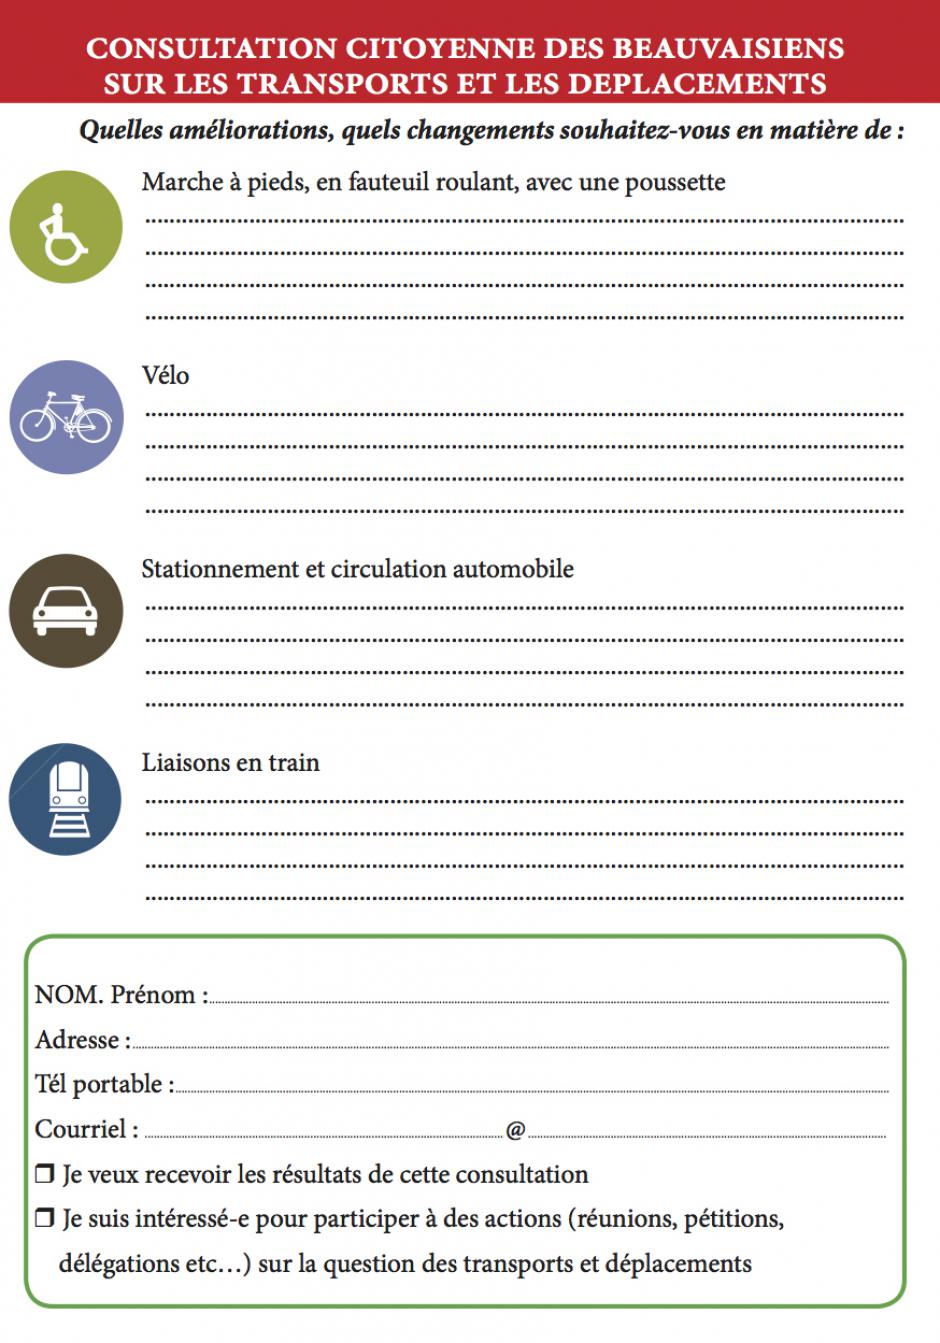 Consultation citoyenne sur les transports et les déplacements - Front de gauche Beauvais, octobre 2015